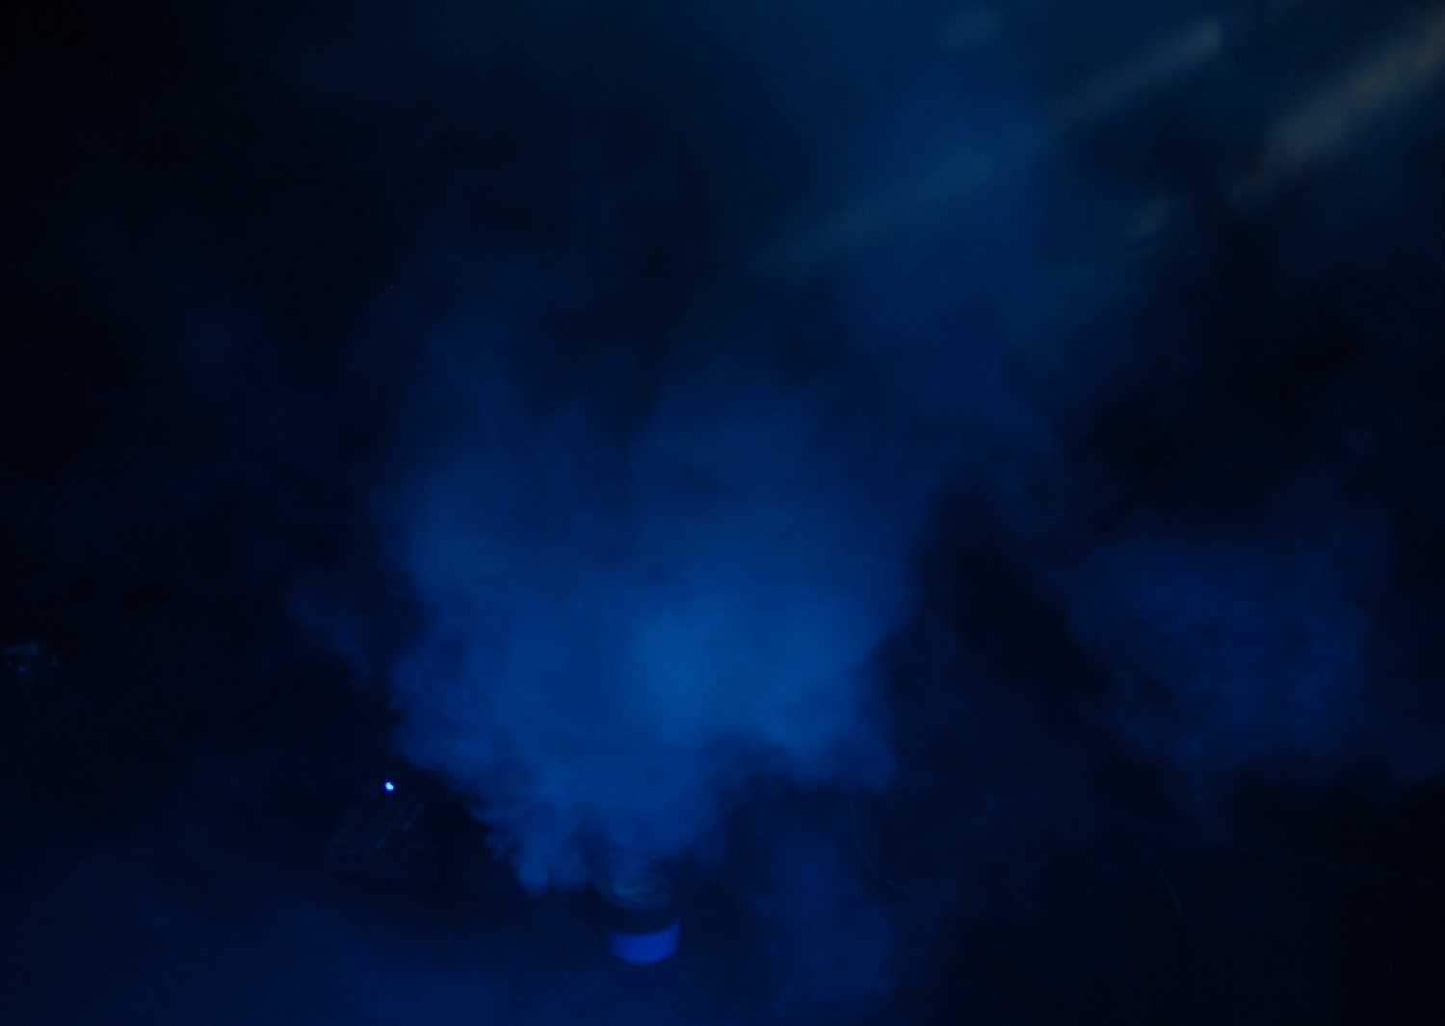 Chauvet Hurricane Haze 1D DMX Haze Machine - PSSL ProSound and Stage Lighting